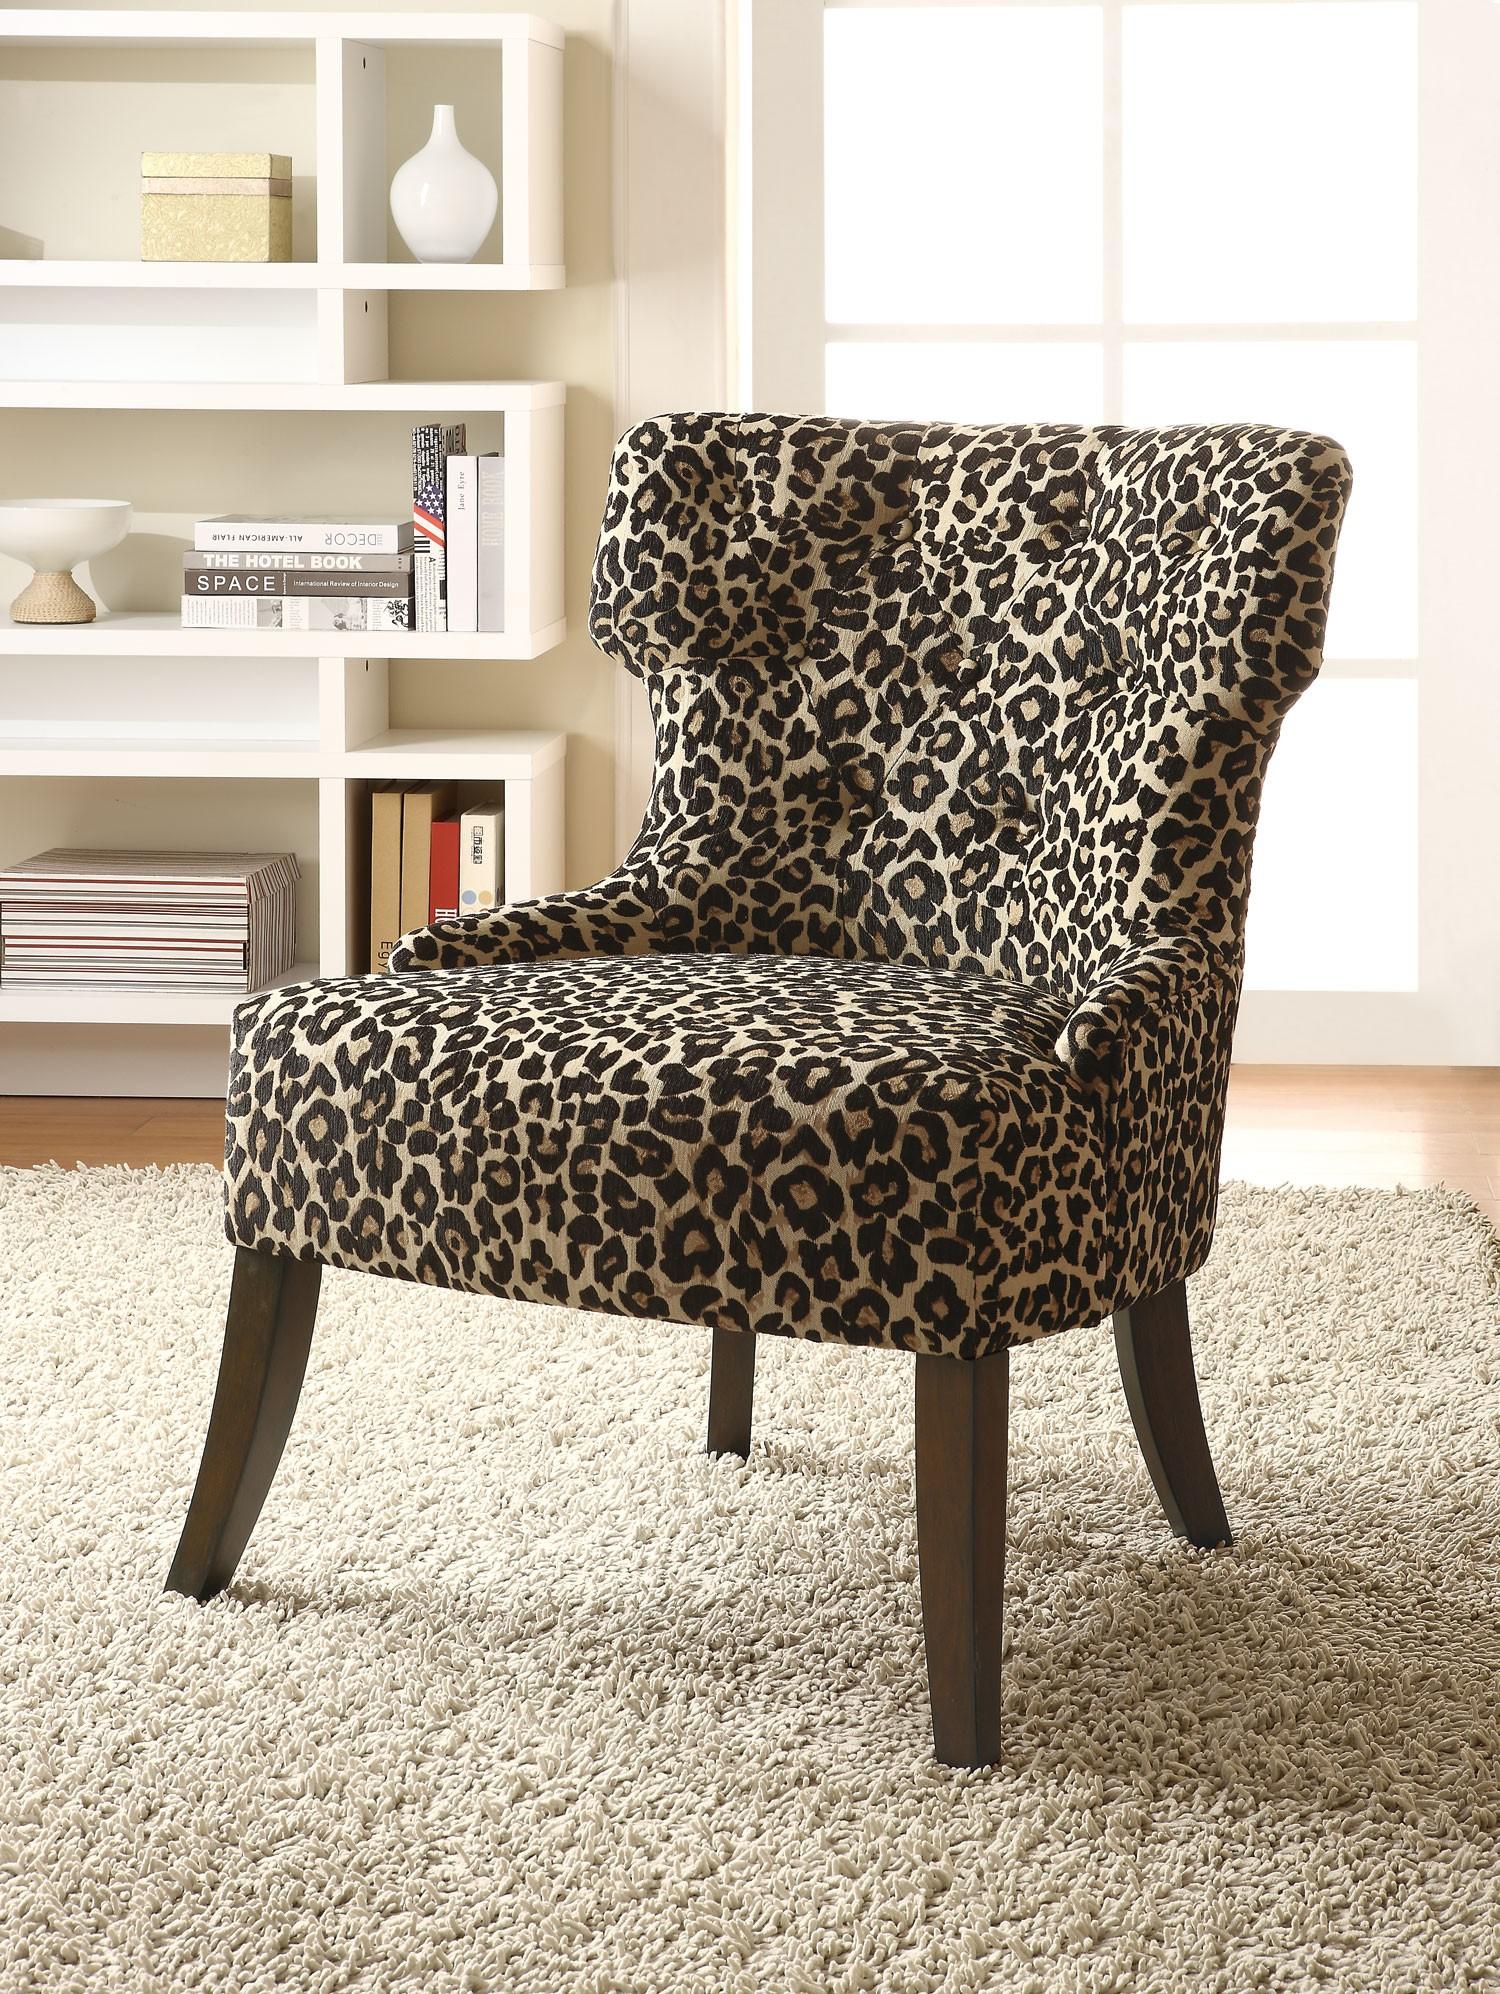 Cheetah print lounge chair